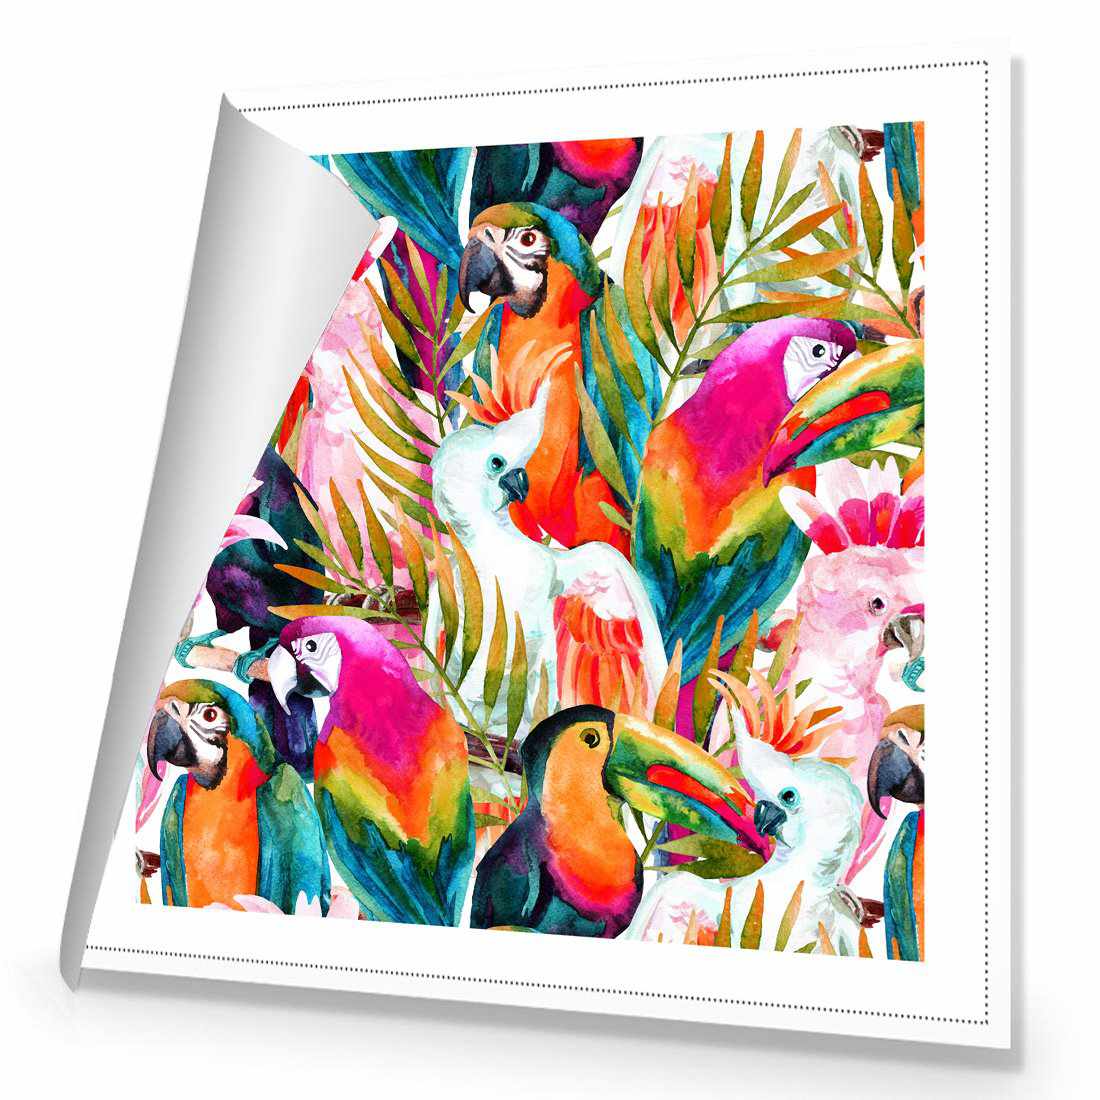 Parrots & Palms, Square Canvas Art-Canvas-Wall Art Designs-30x30cm-Rolled Canvas-Wall Art Designs